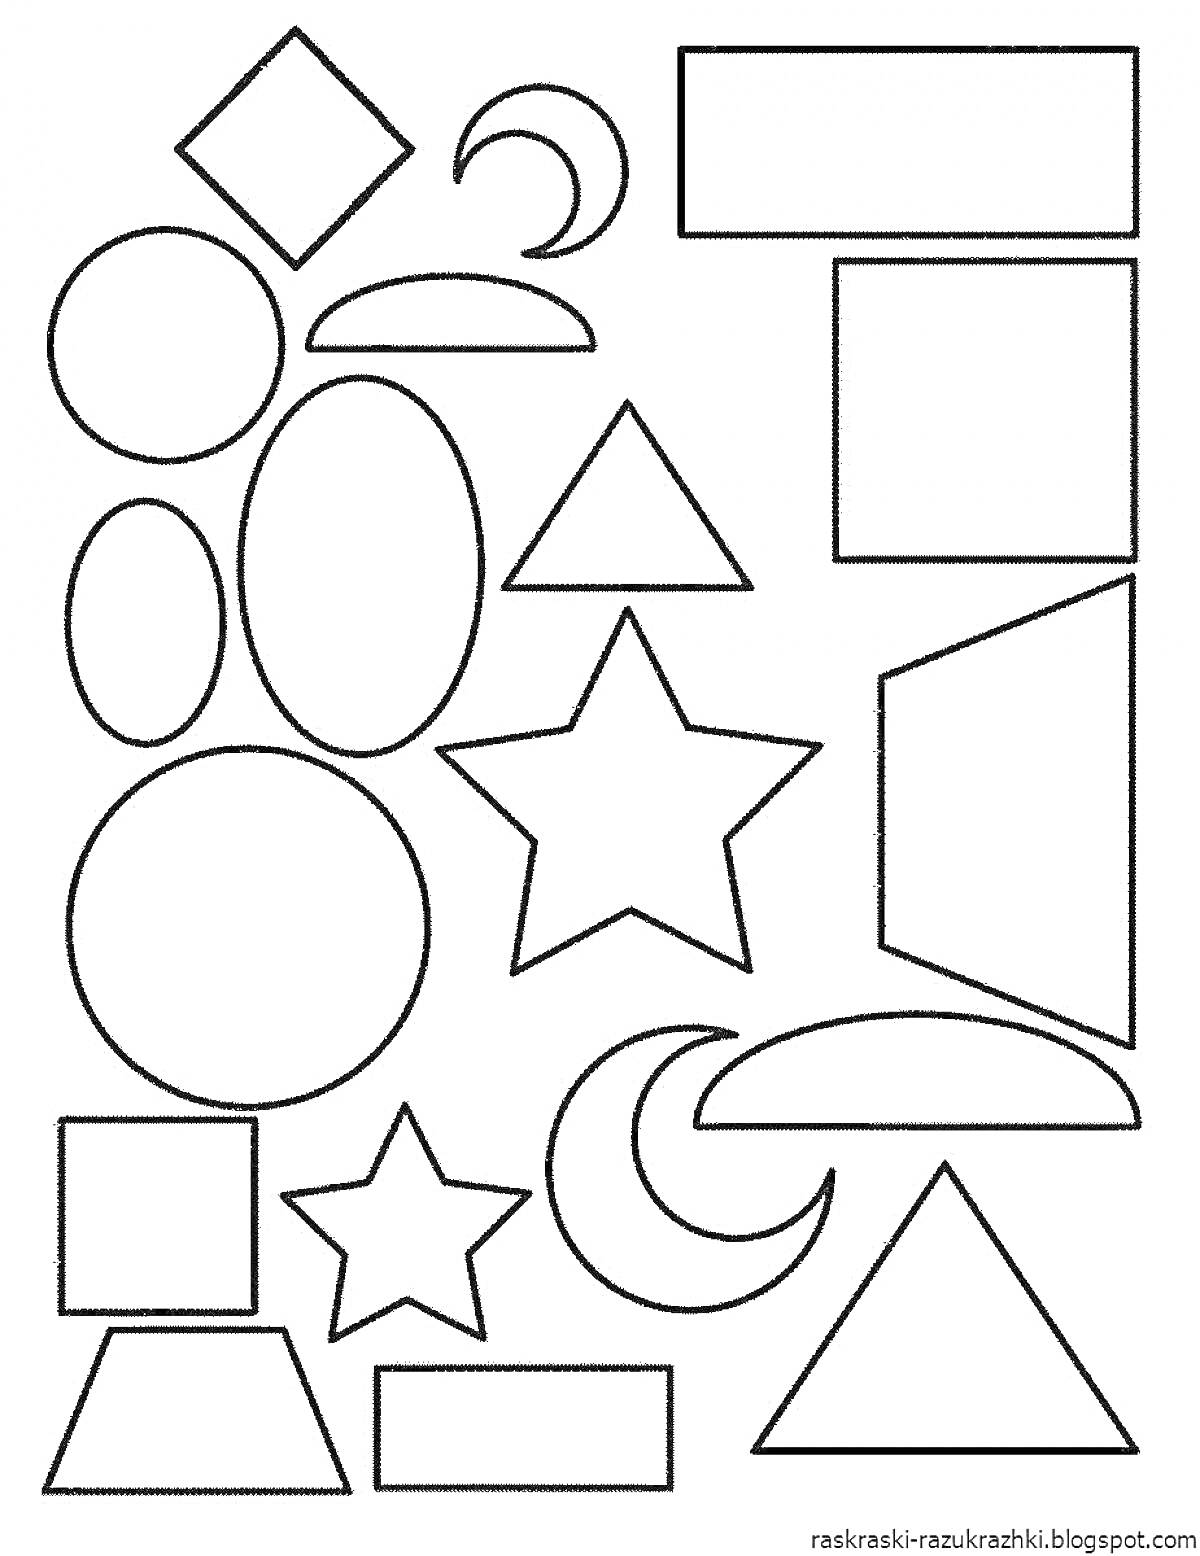 На раскраске изображено: Геометрические фигуры, Квадраты, Прямоугольники, Круги, Треугольники, Звезды, Полумесяцы